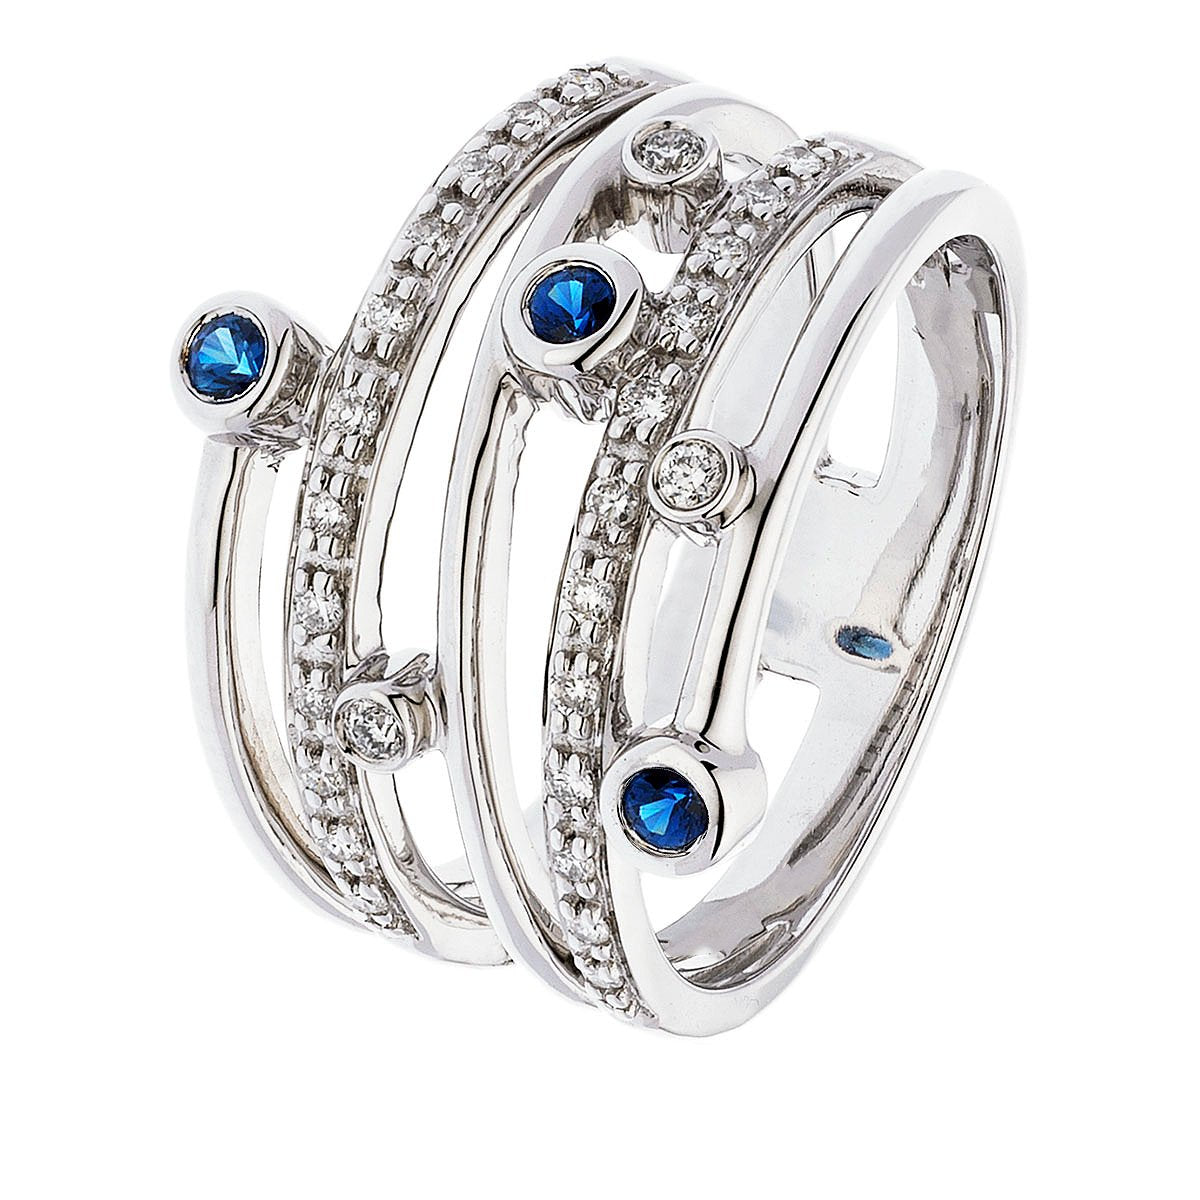 Diamant-Jubiläumsband-Lünette, rund, blaue Ceylon-Saphire, 1 Karat - harrychadent.ch